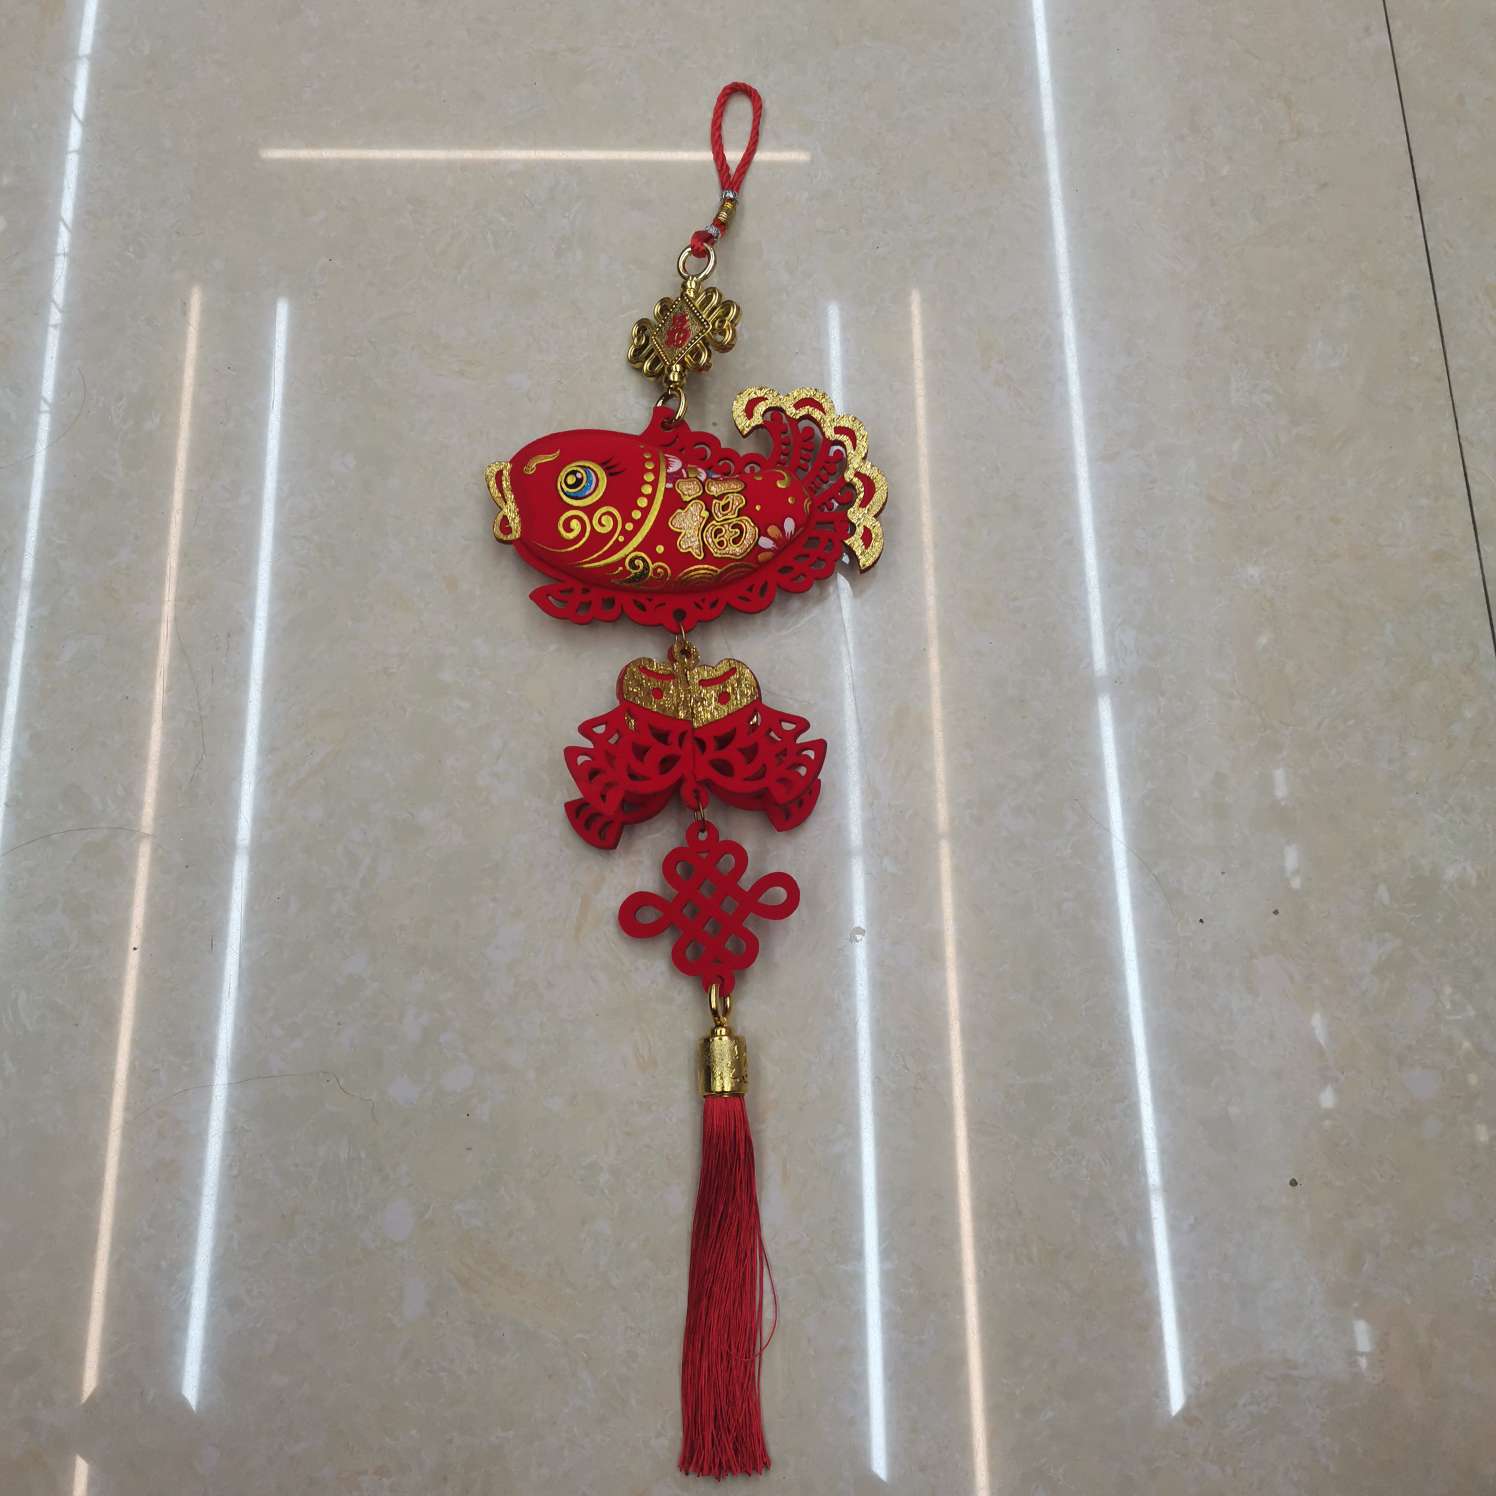 中国结福字厂家直销客厅装饰新款年货特色工艺品礼品产品图